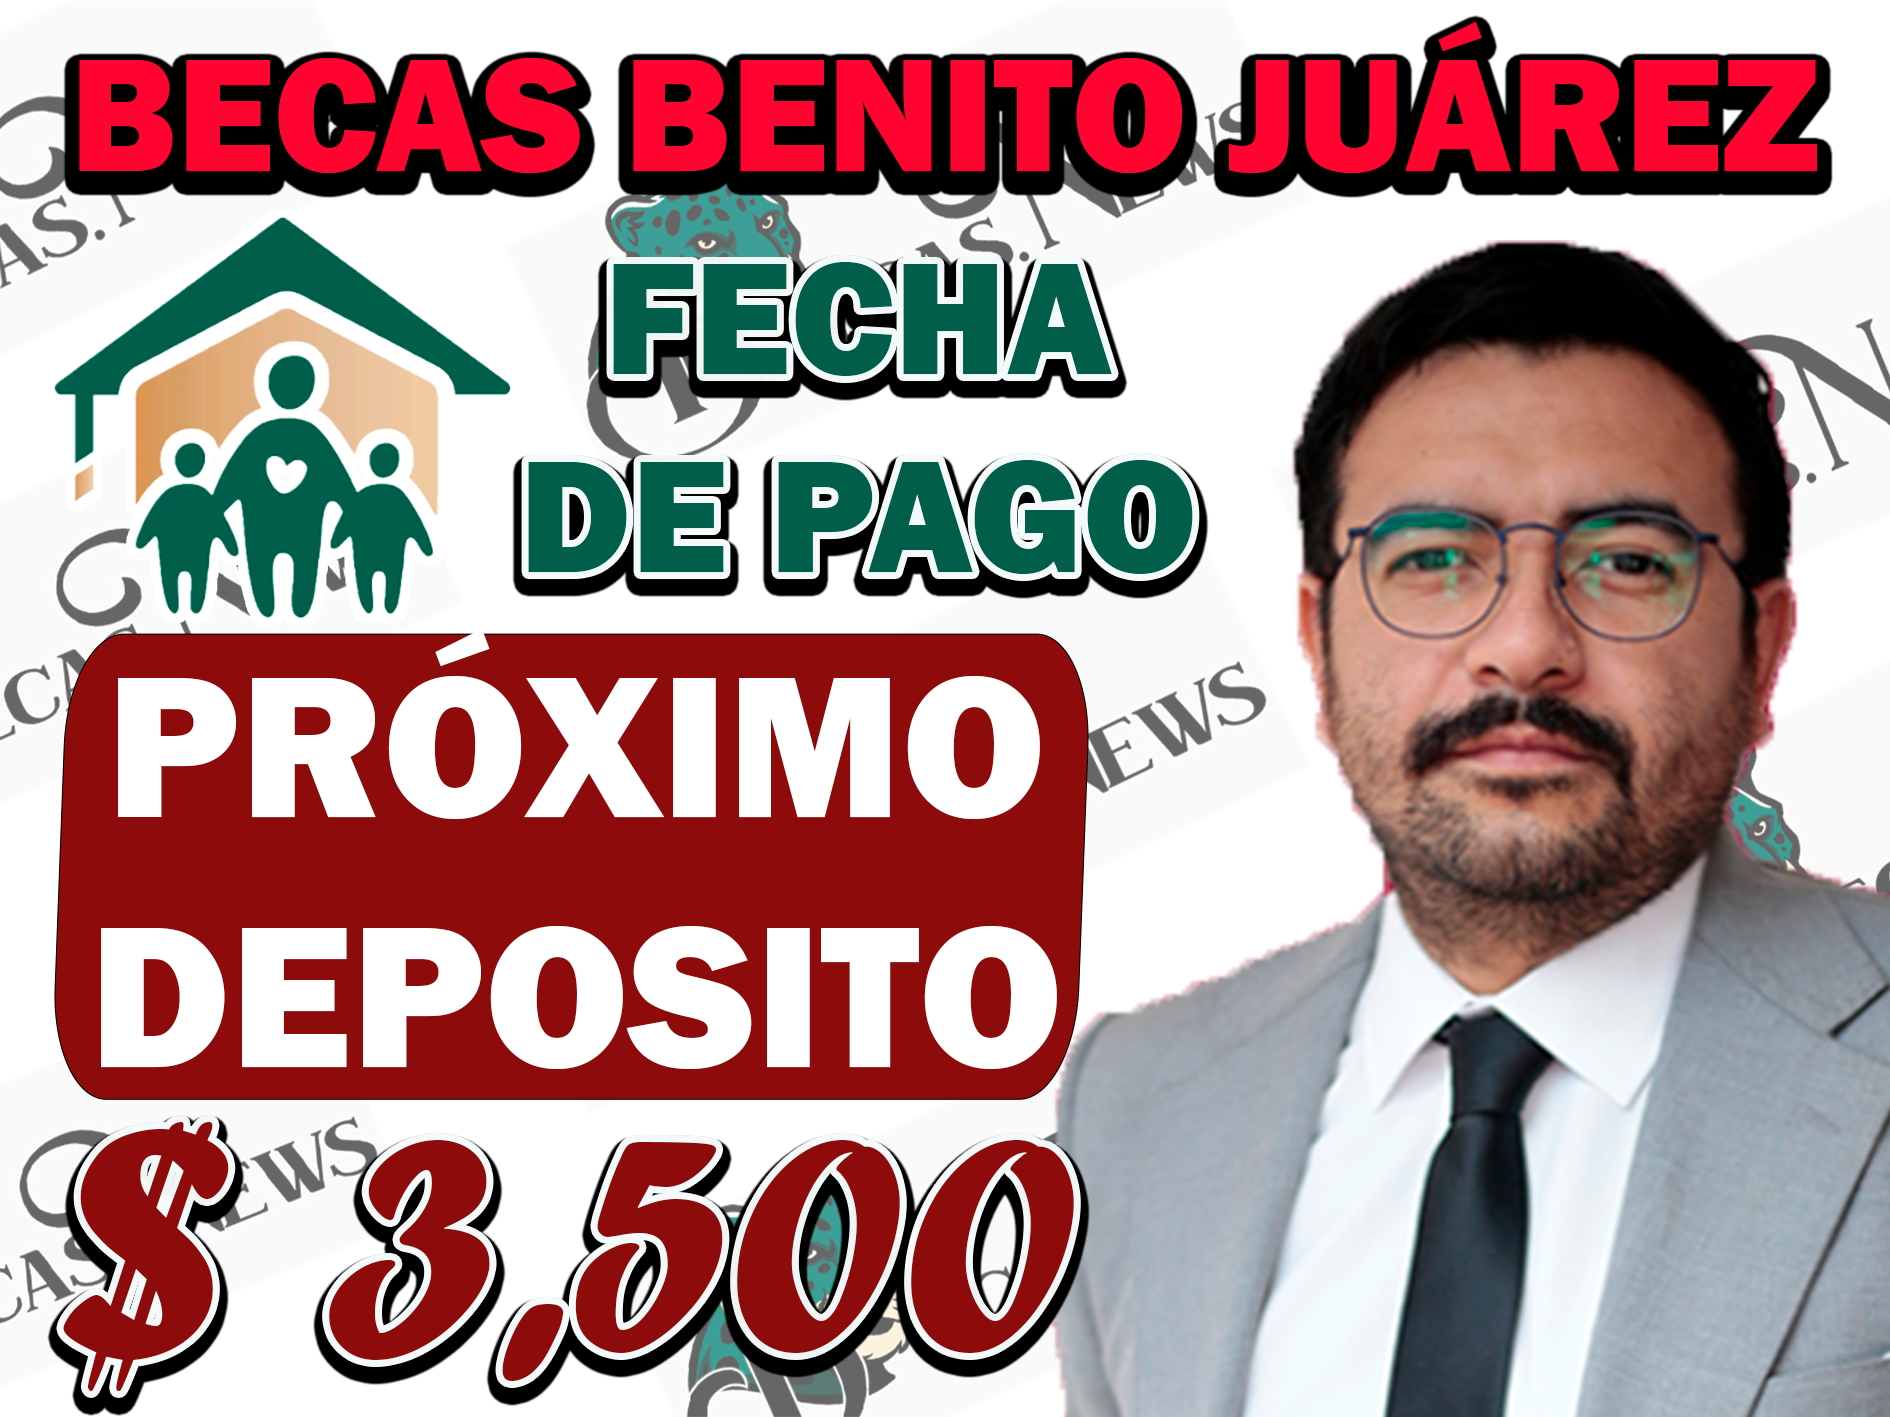 RECIBE $ 3,500 EN ESTA FECHA| BECAS BENITO JUÁREZ NIVEL BÁSICO